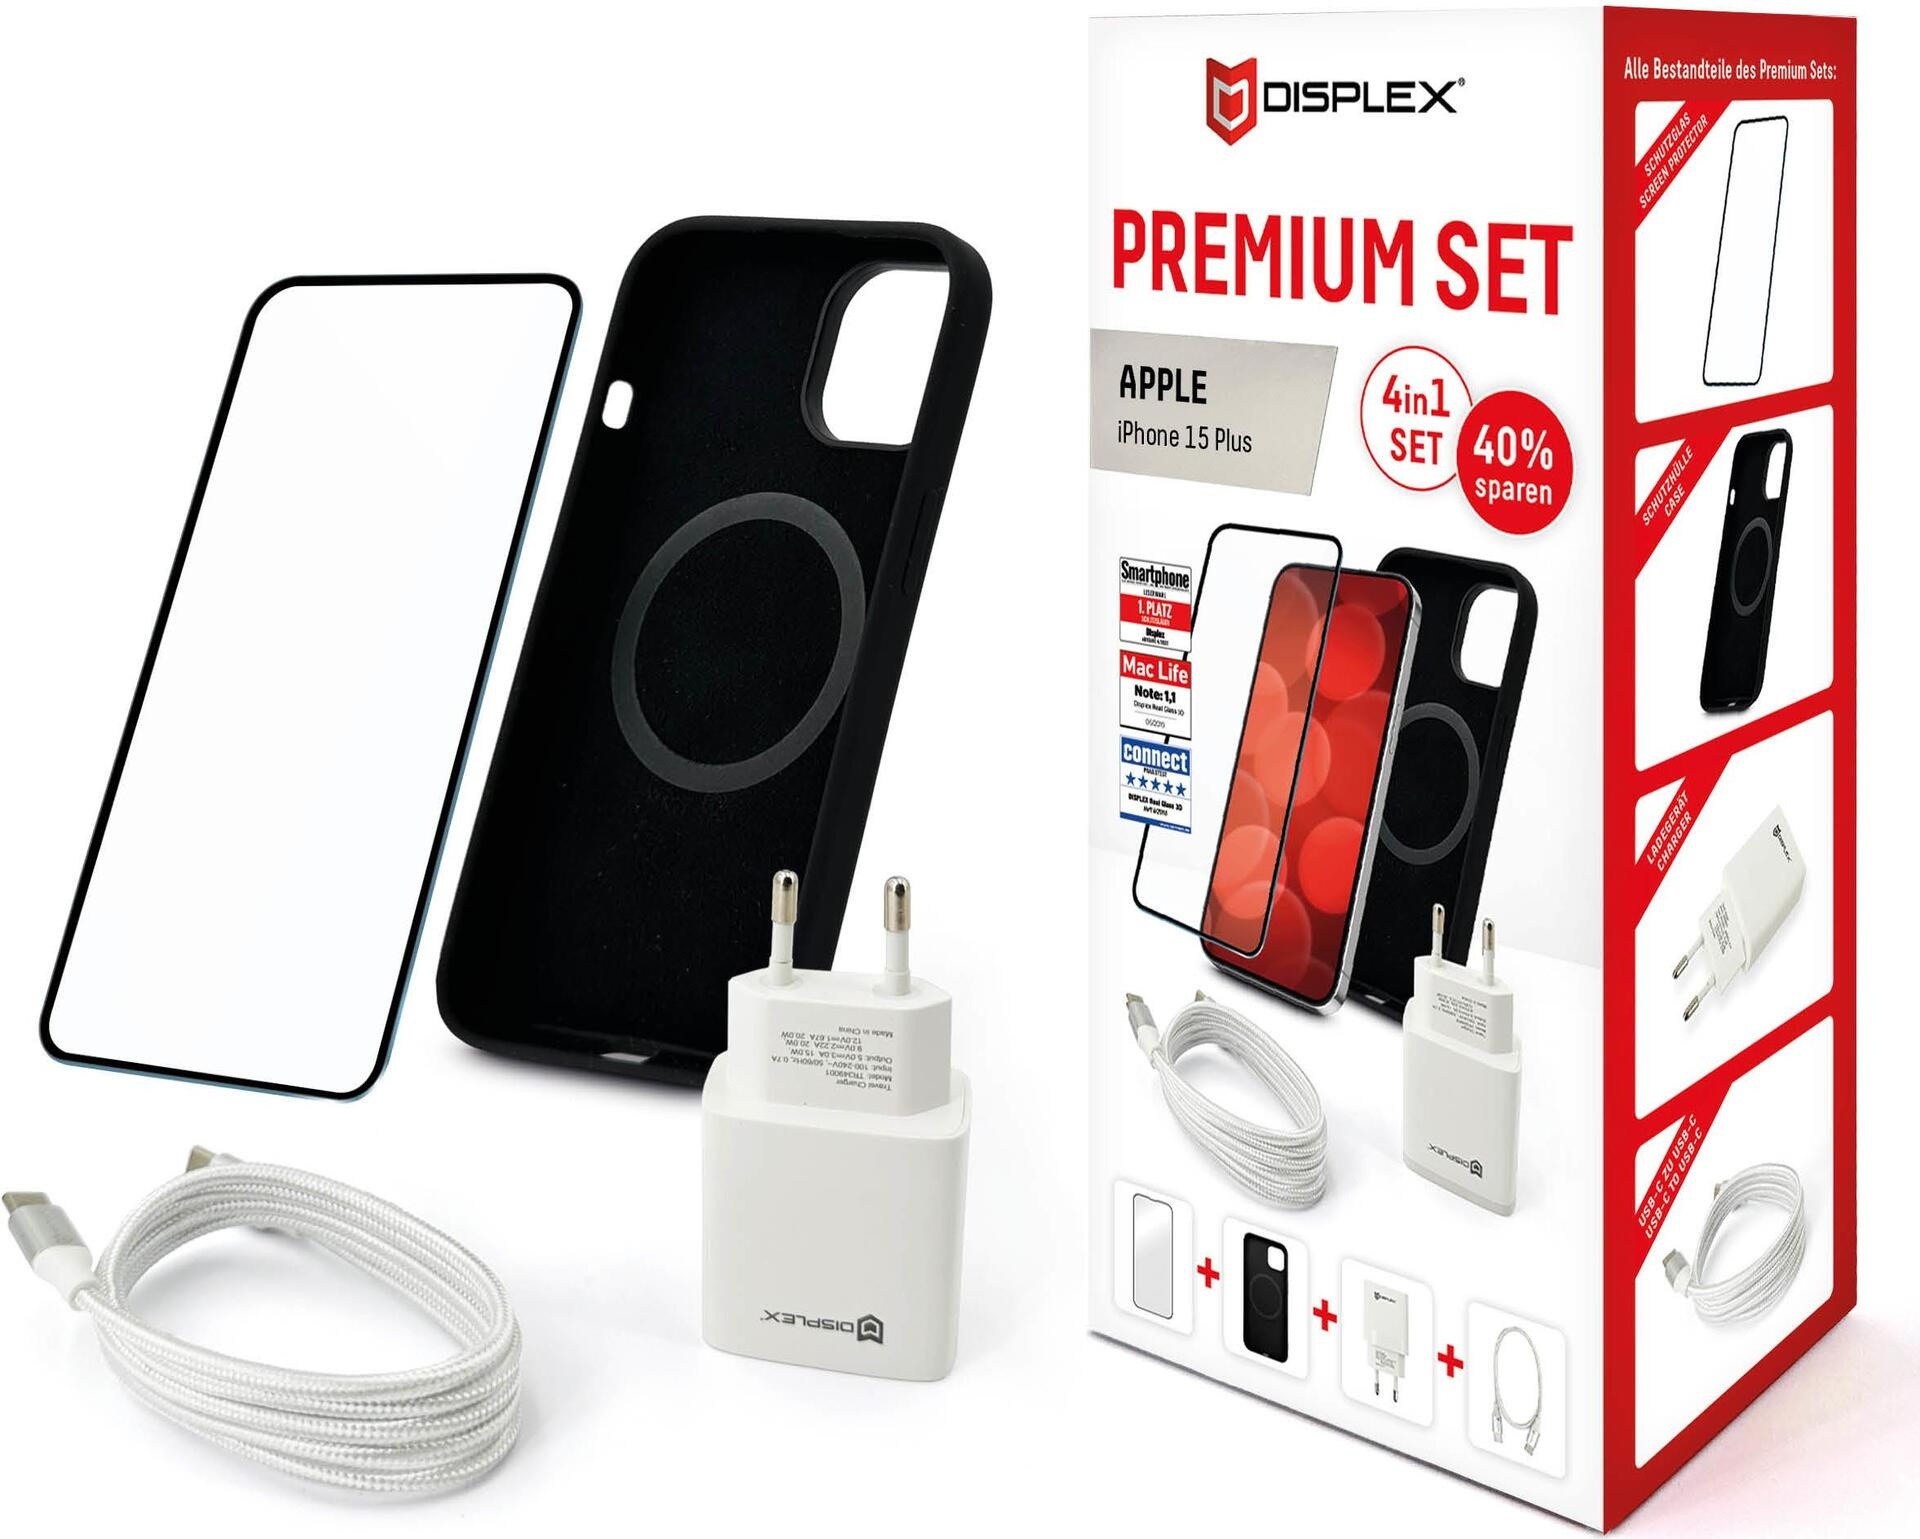 Displex Premium 4 in 1 Set für Apple iPhone 15 Plus - Transparent - Schwarz - Weiß - 244 g - 70 mm - 95 mm - 200 mm - USB Typ-C auf USB Typ-C (01870)